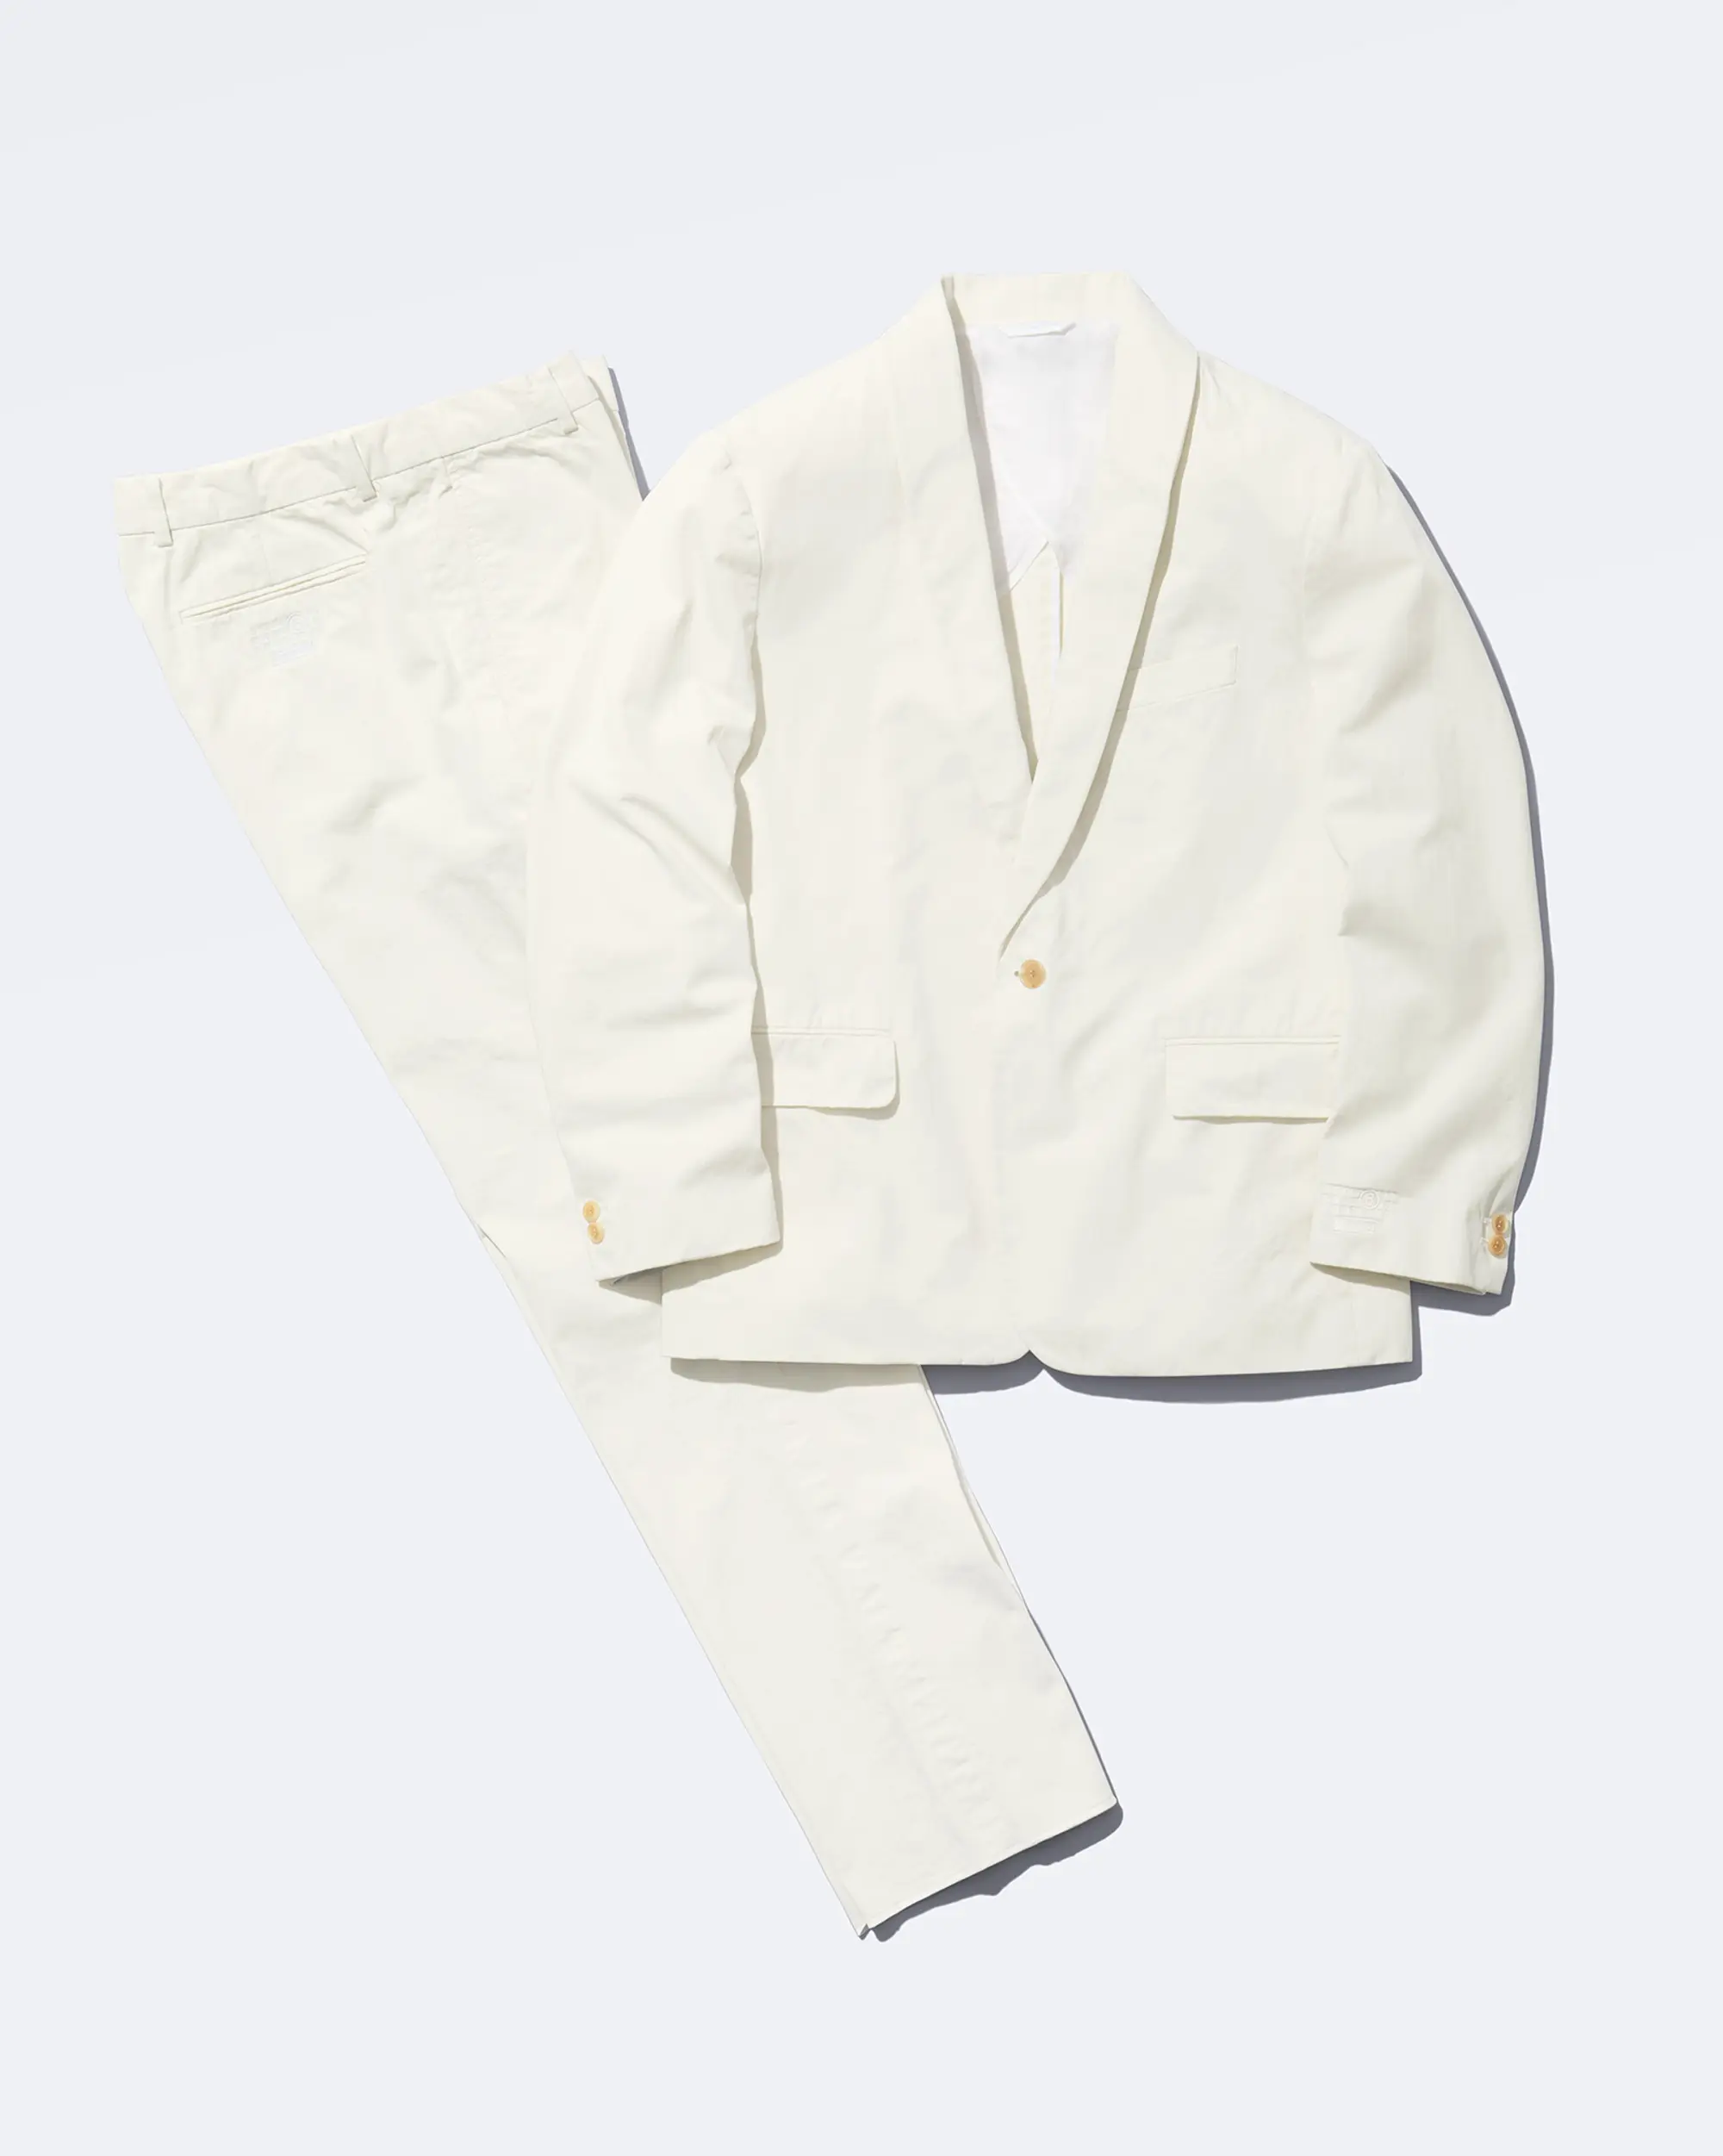 Supreme®/MM6 Maison Margiela Washed Cotton Suit